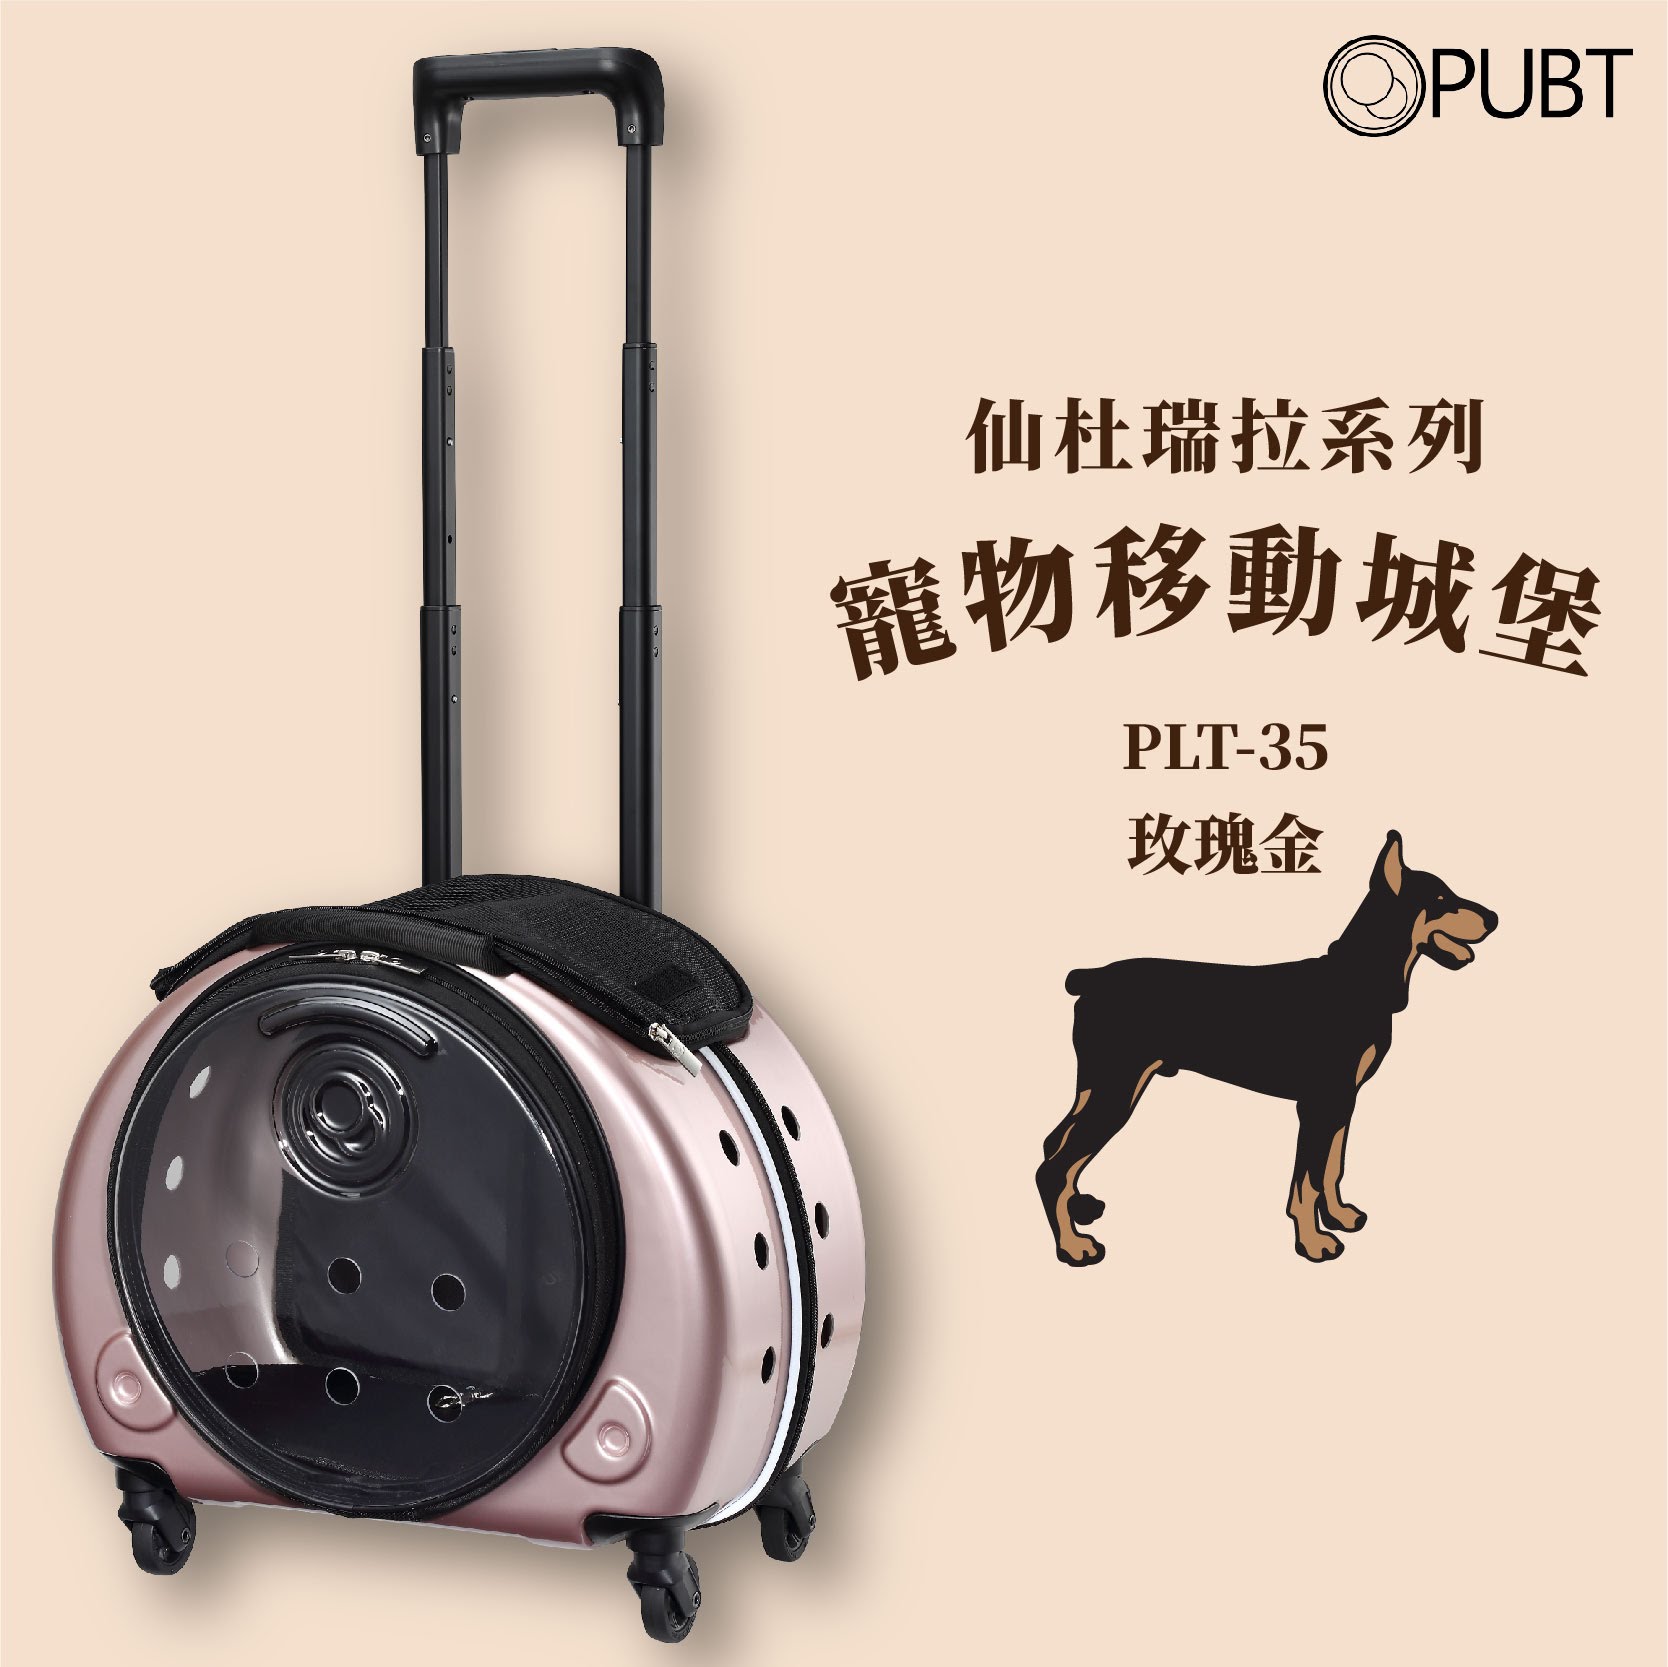 【PUBT】仙杜瑞拉系列✧寵物移動城堡-玫瑰金 PLT-35 可承9kg內 拉桿包 拉桿箱 外出籠 外出包 狗籠 貓籠